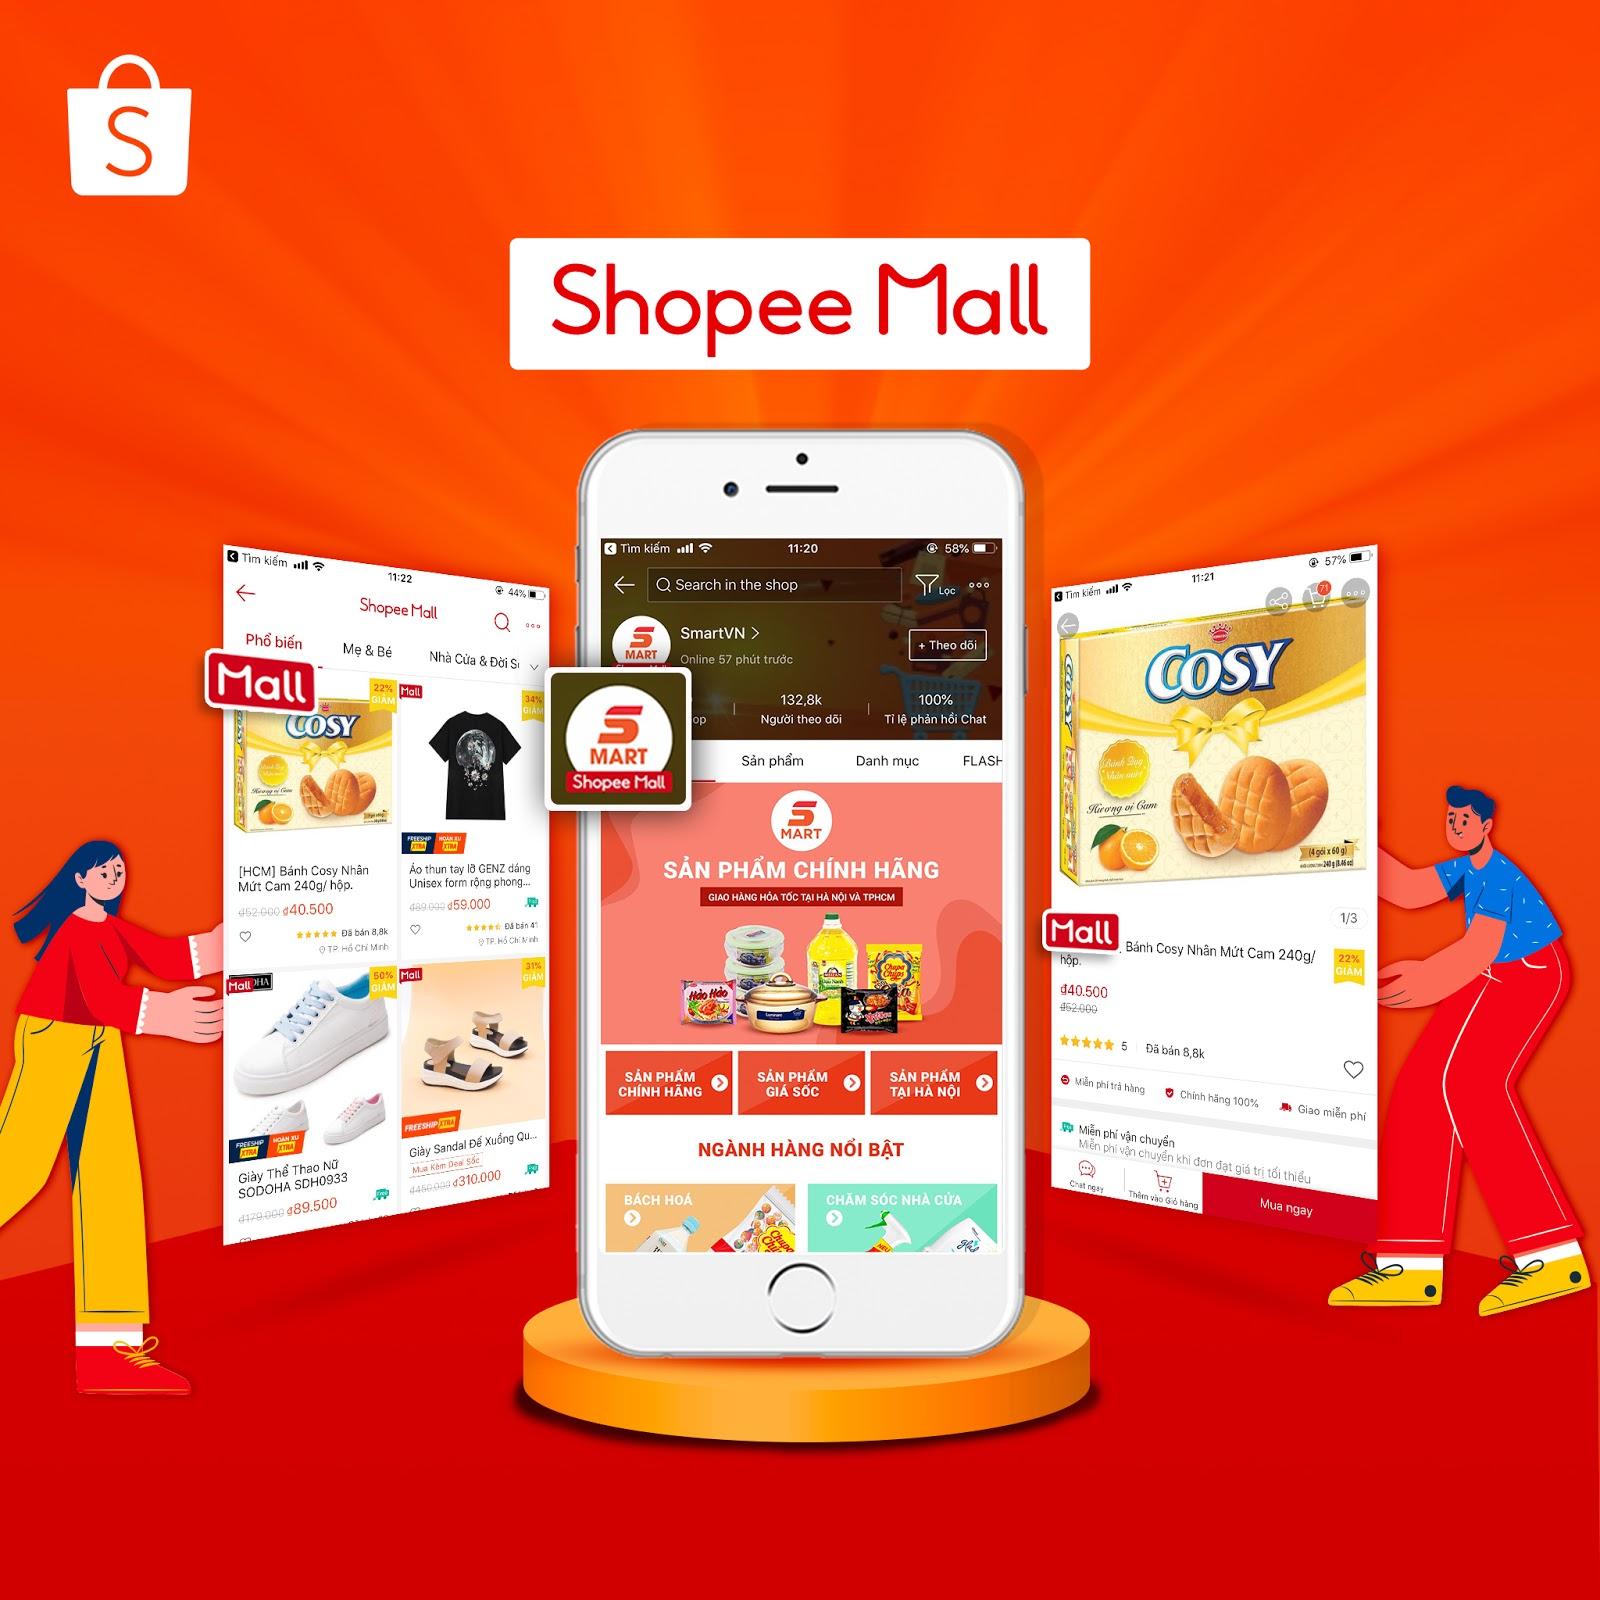 Hãy chọn lựa loại Shop phù hợp với doanh nghiệp của bạn trên Shopee